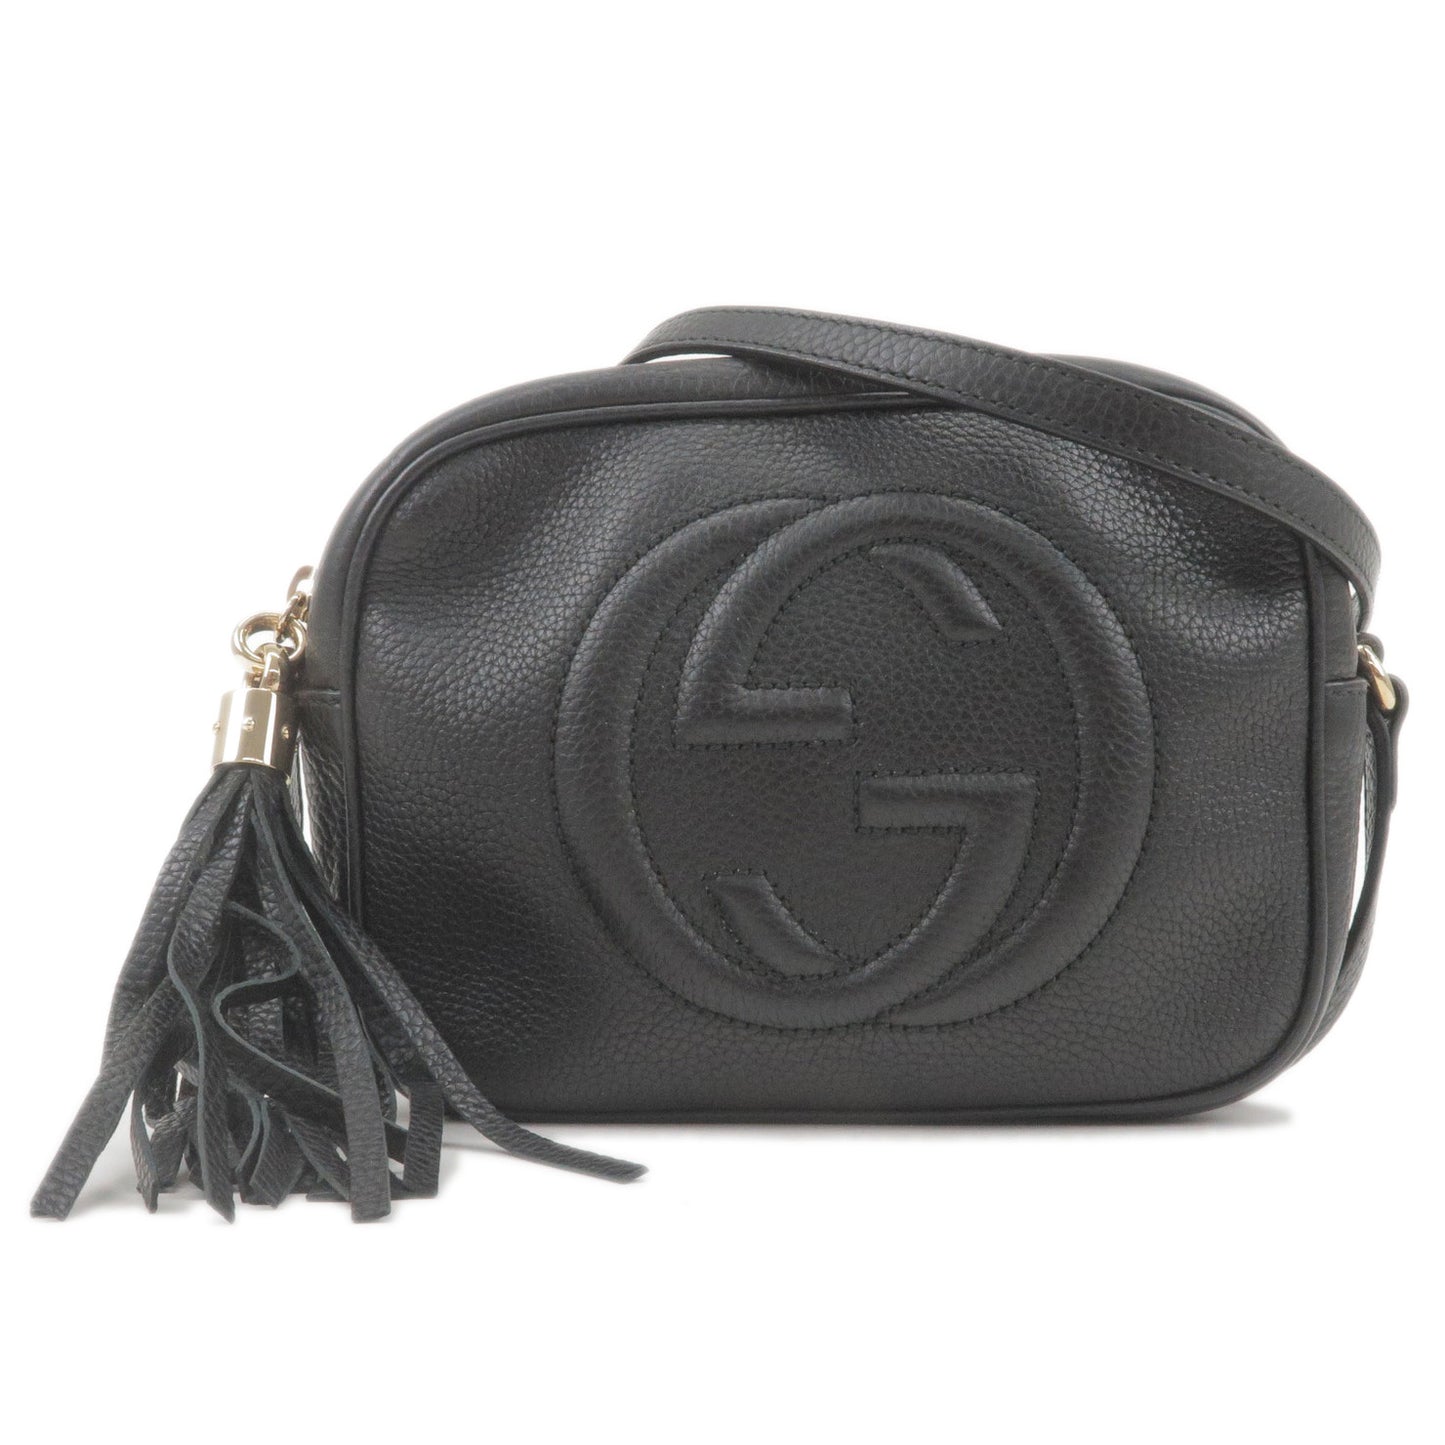 GUCCI-SOHO-Leather-Shoulder-Bag-Black-308364